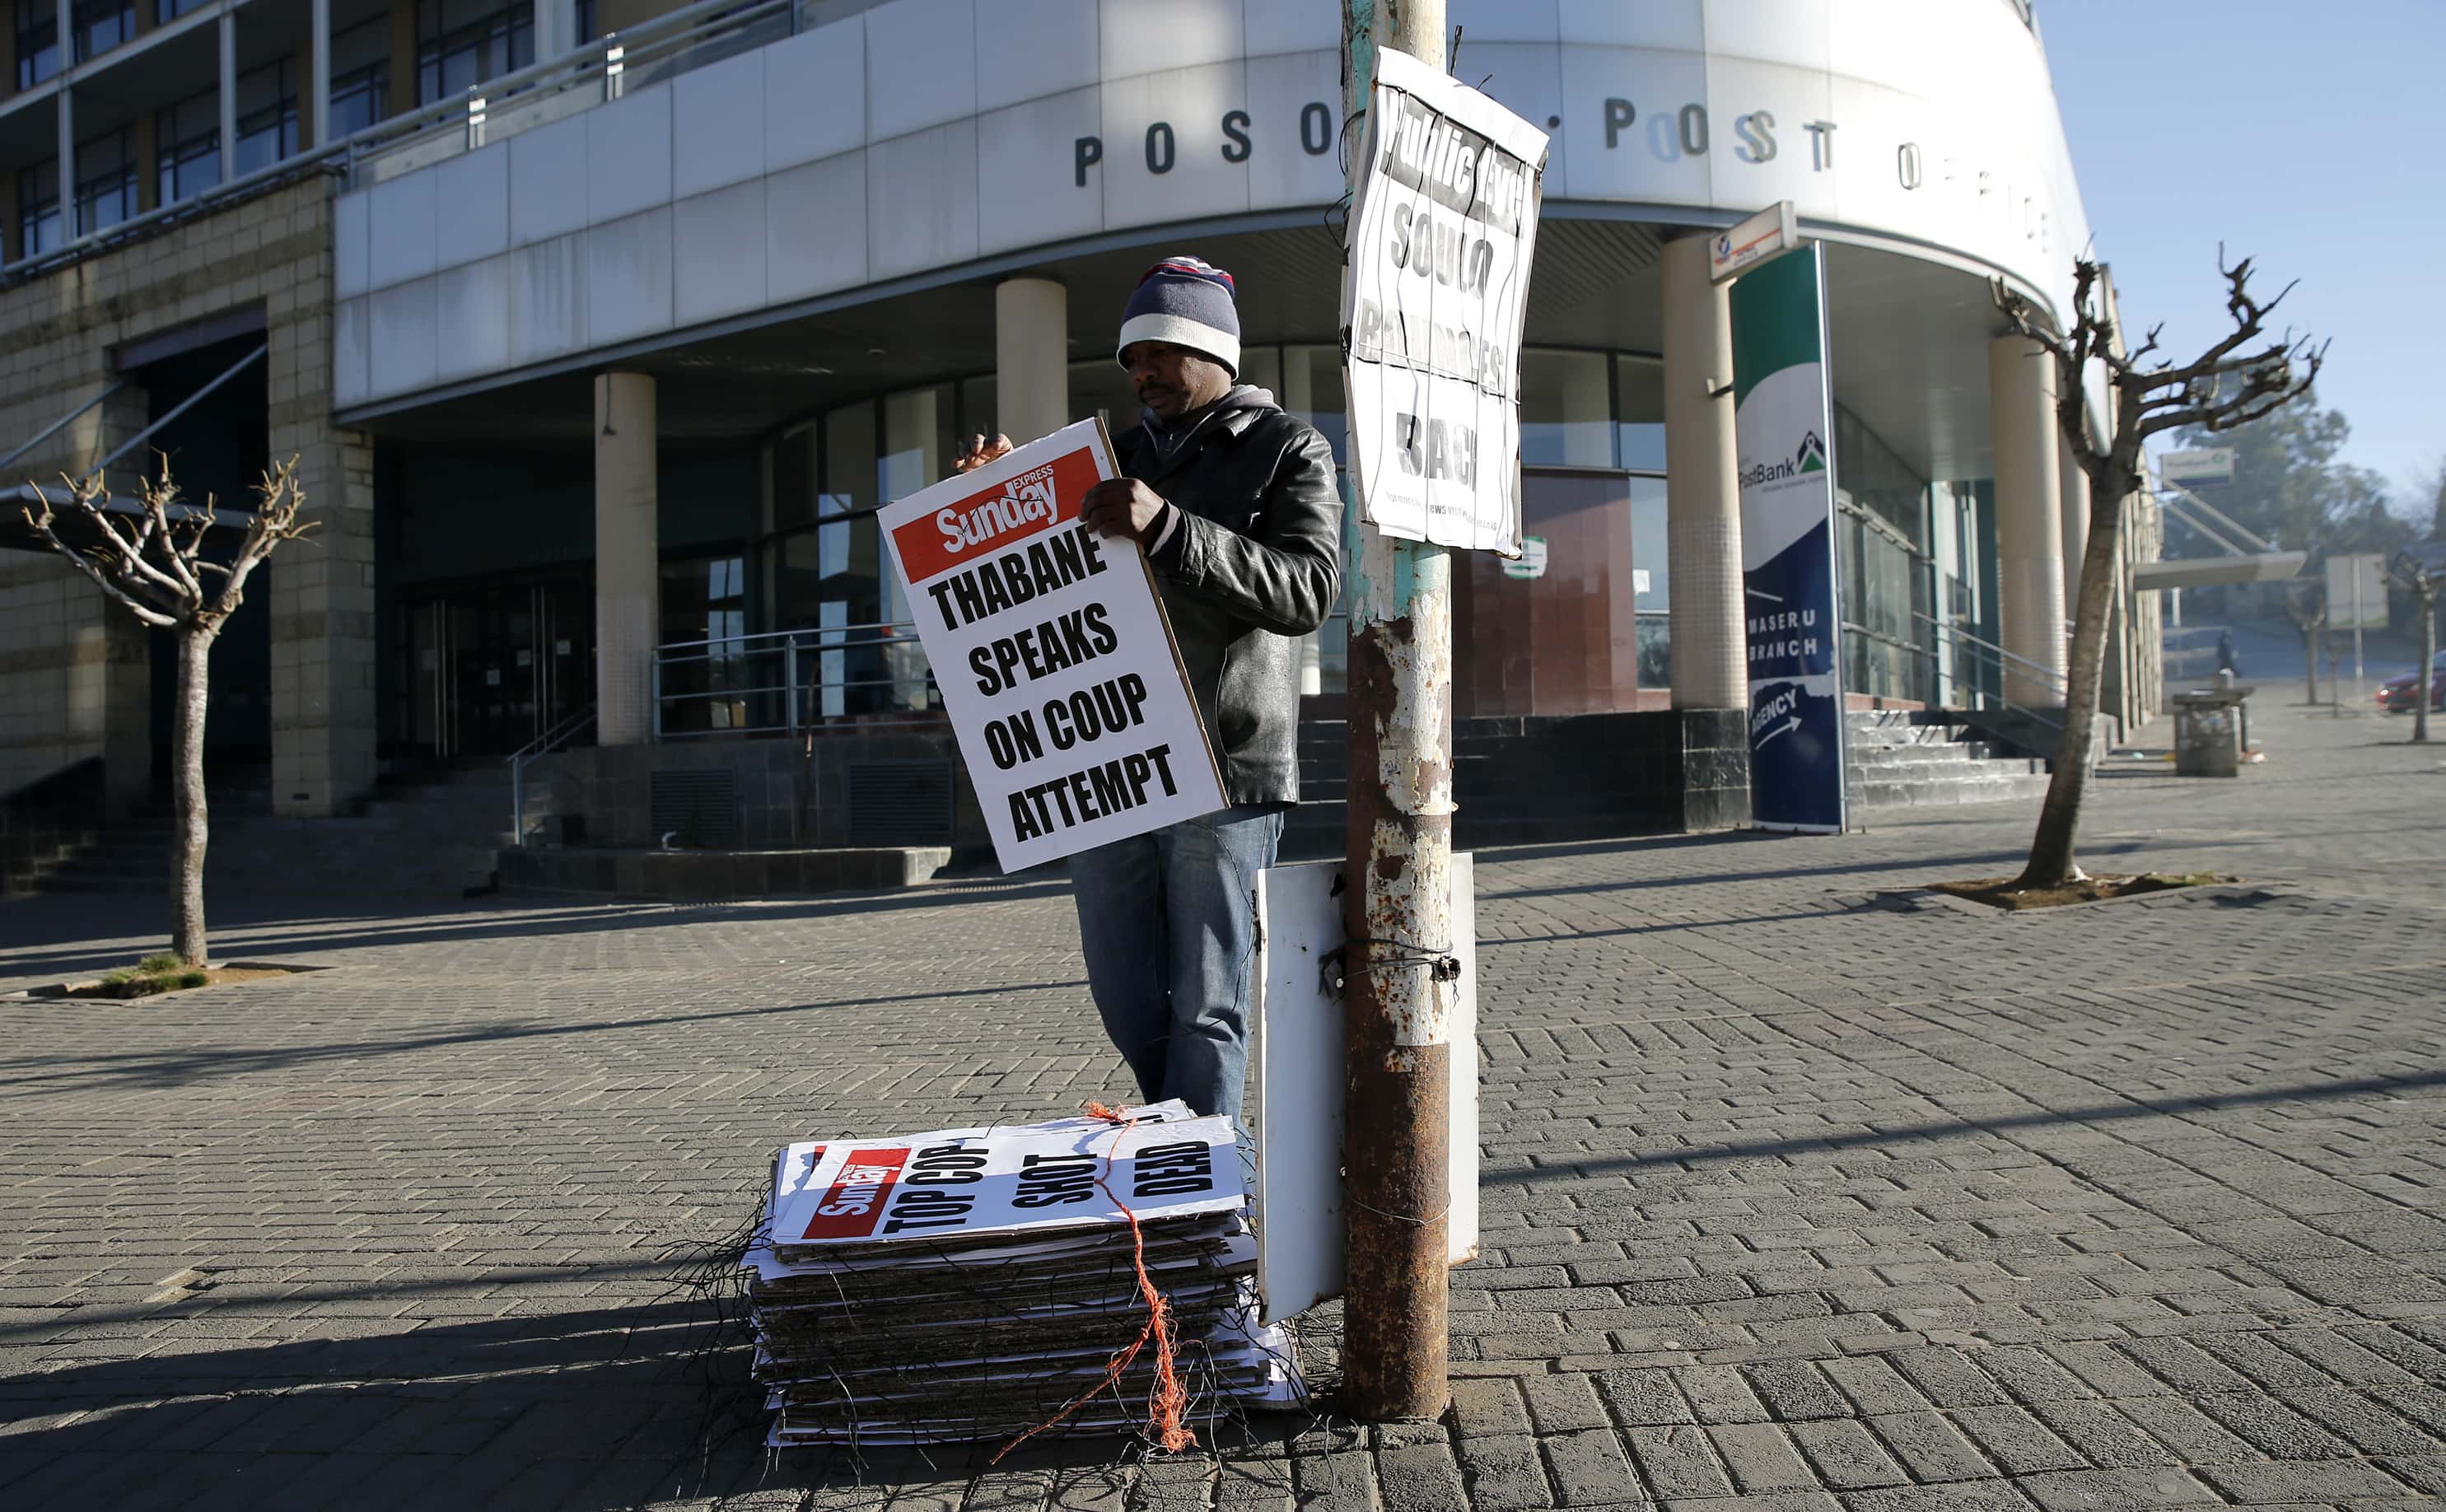 A worker hangs posters displaying newspaper headlines, in Maseru, Lesotho, 31 August 2014, REUTERS/Siphiwe Sibeko